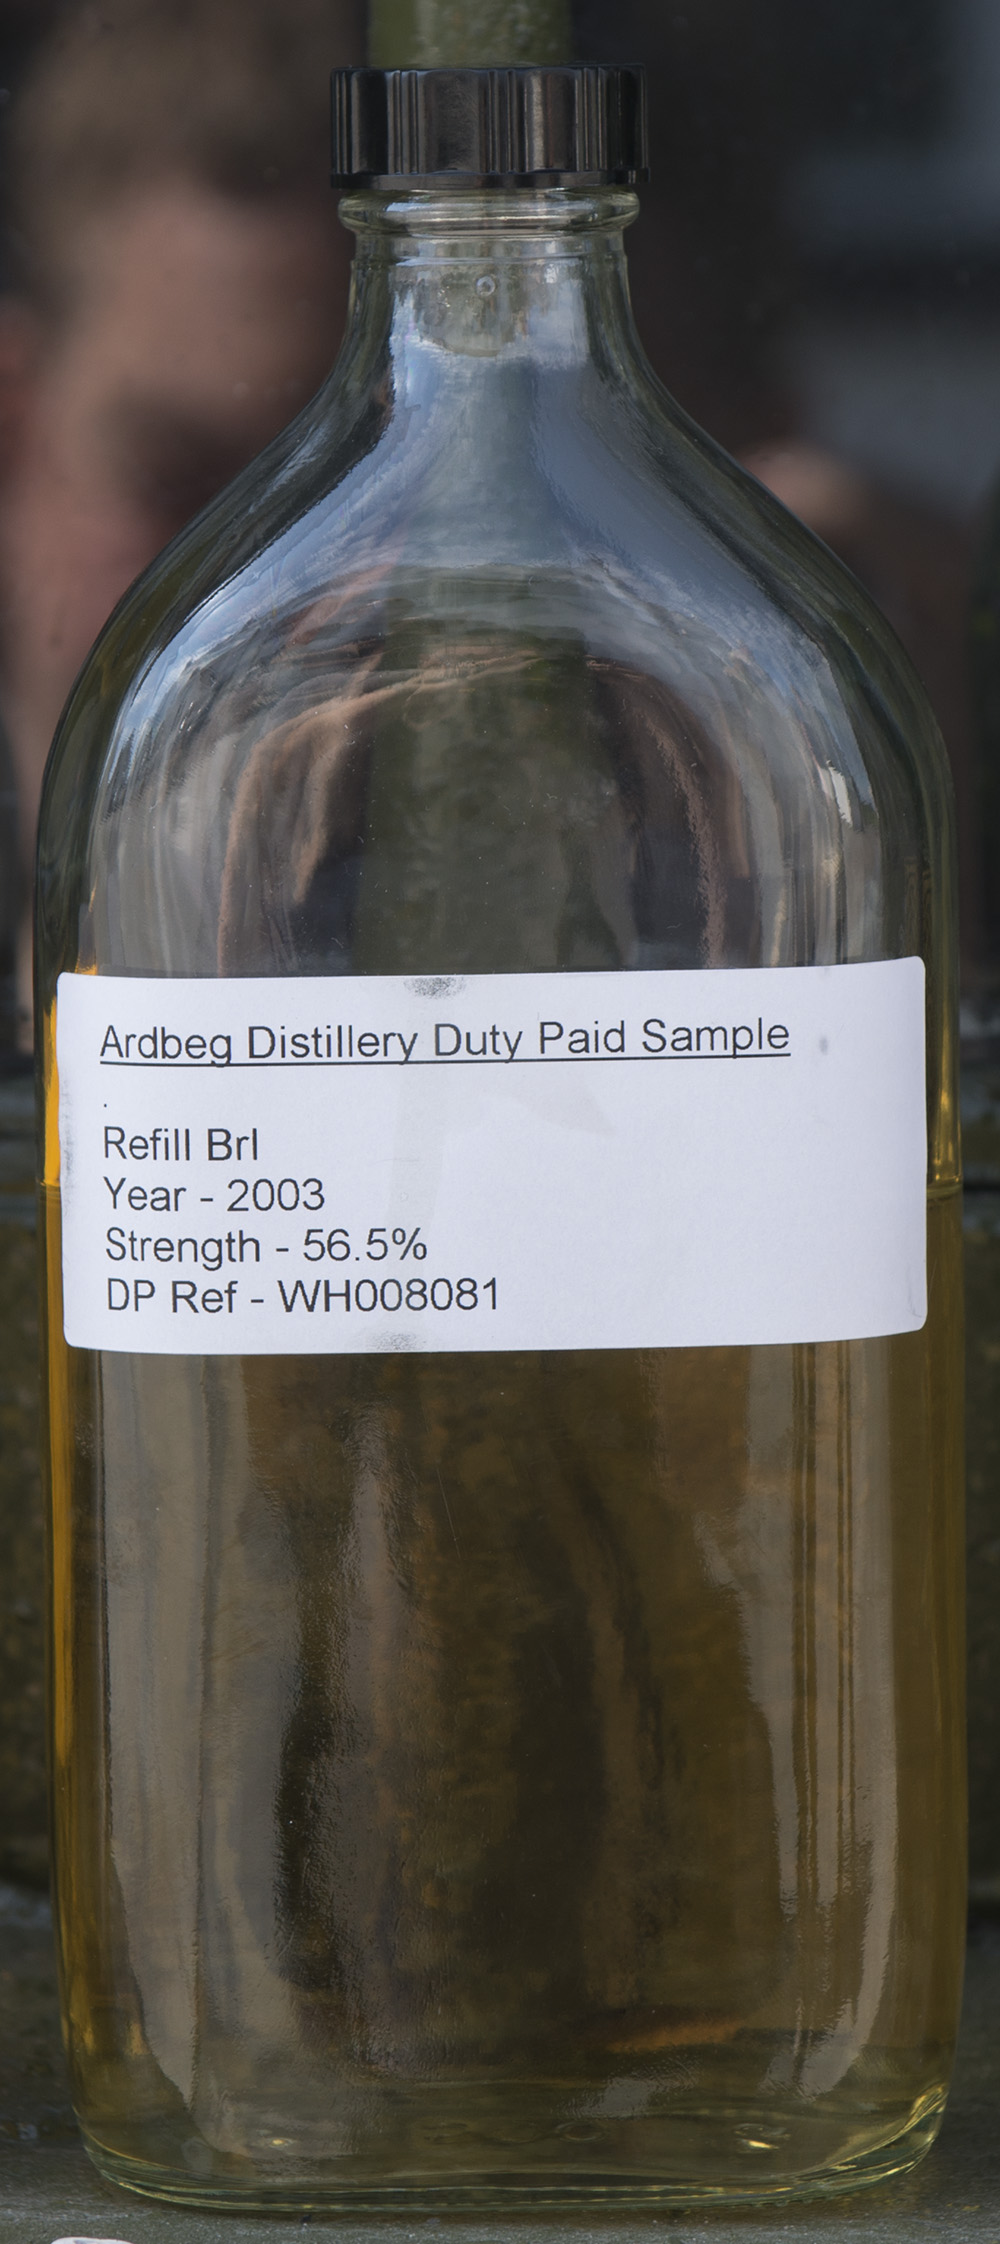 Billede: Ardbeg 2003 - cask sample from refill bourbon cask.jpg